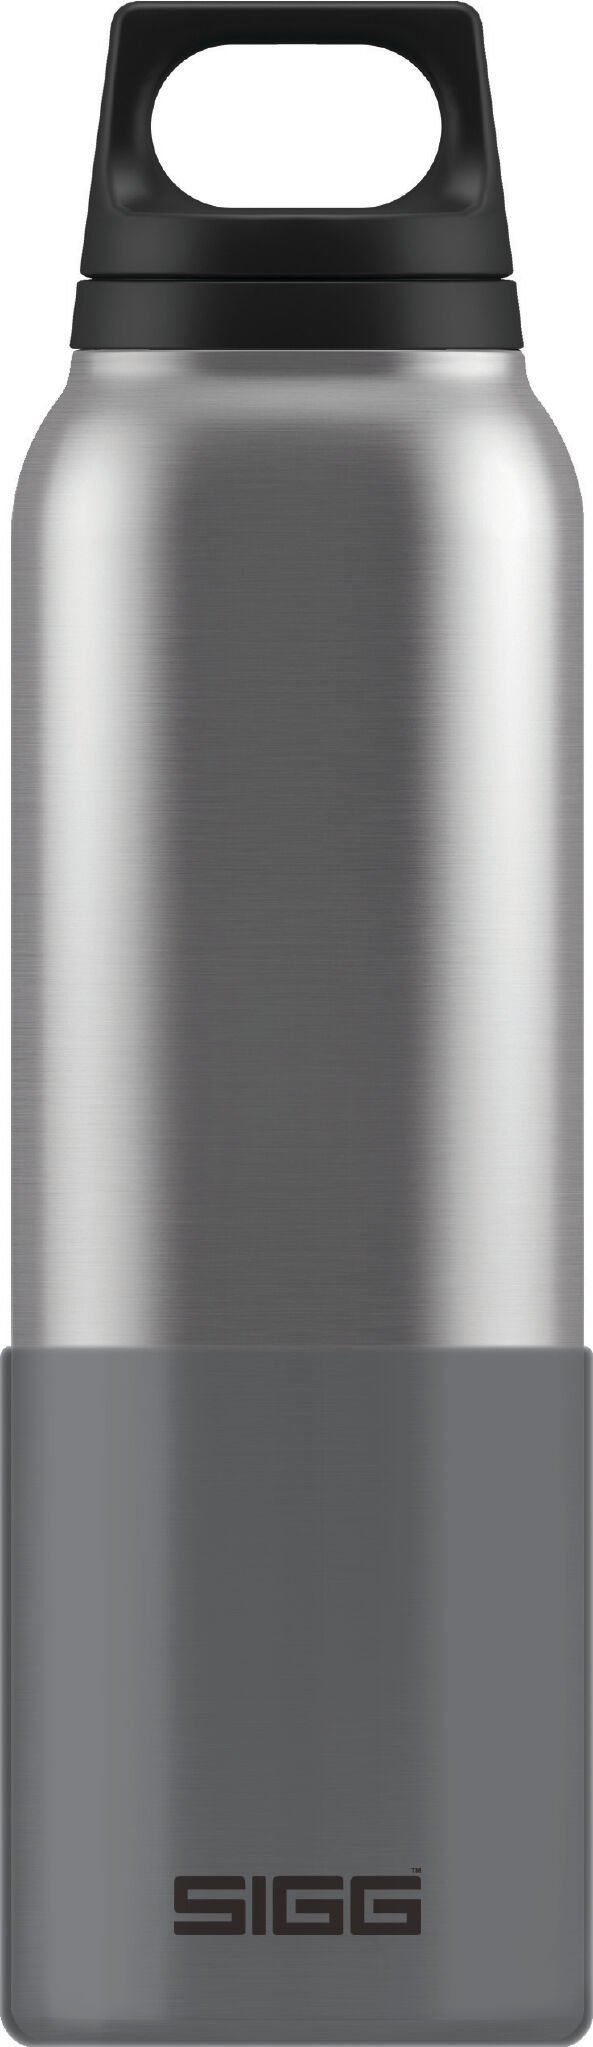 Sigg - Hot & Cold 0.5L Avec Cup - Vacuum flask